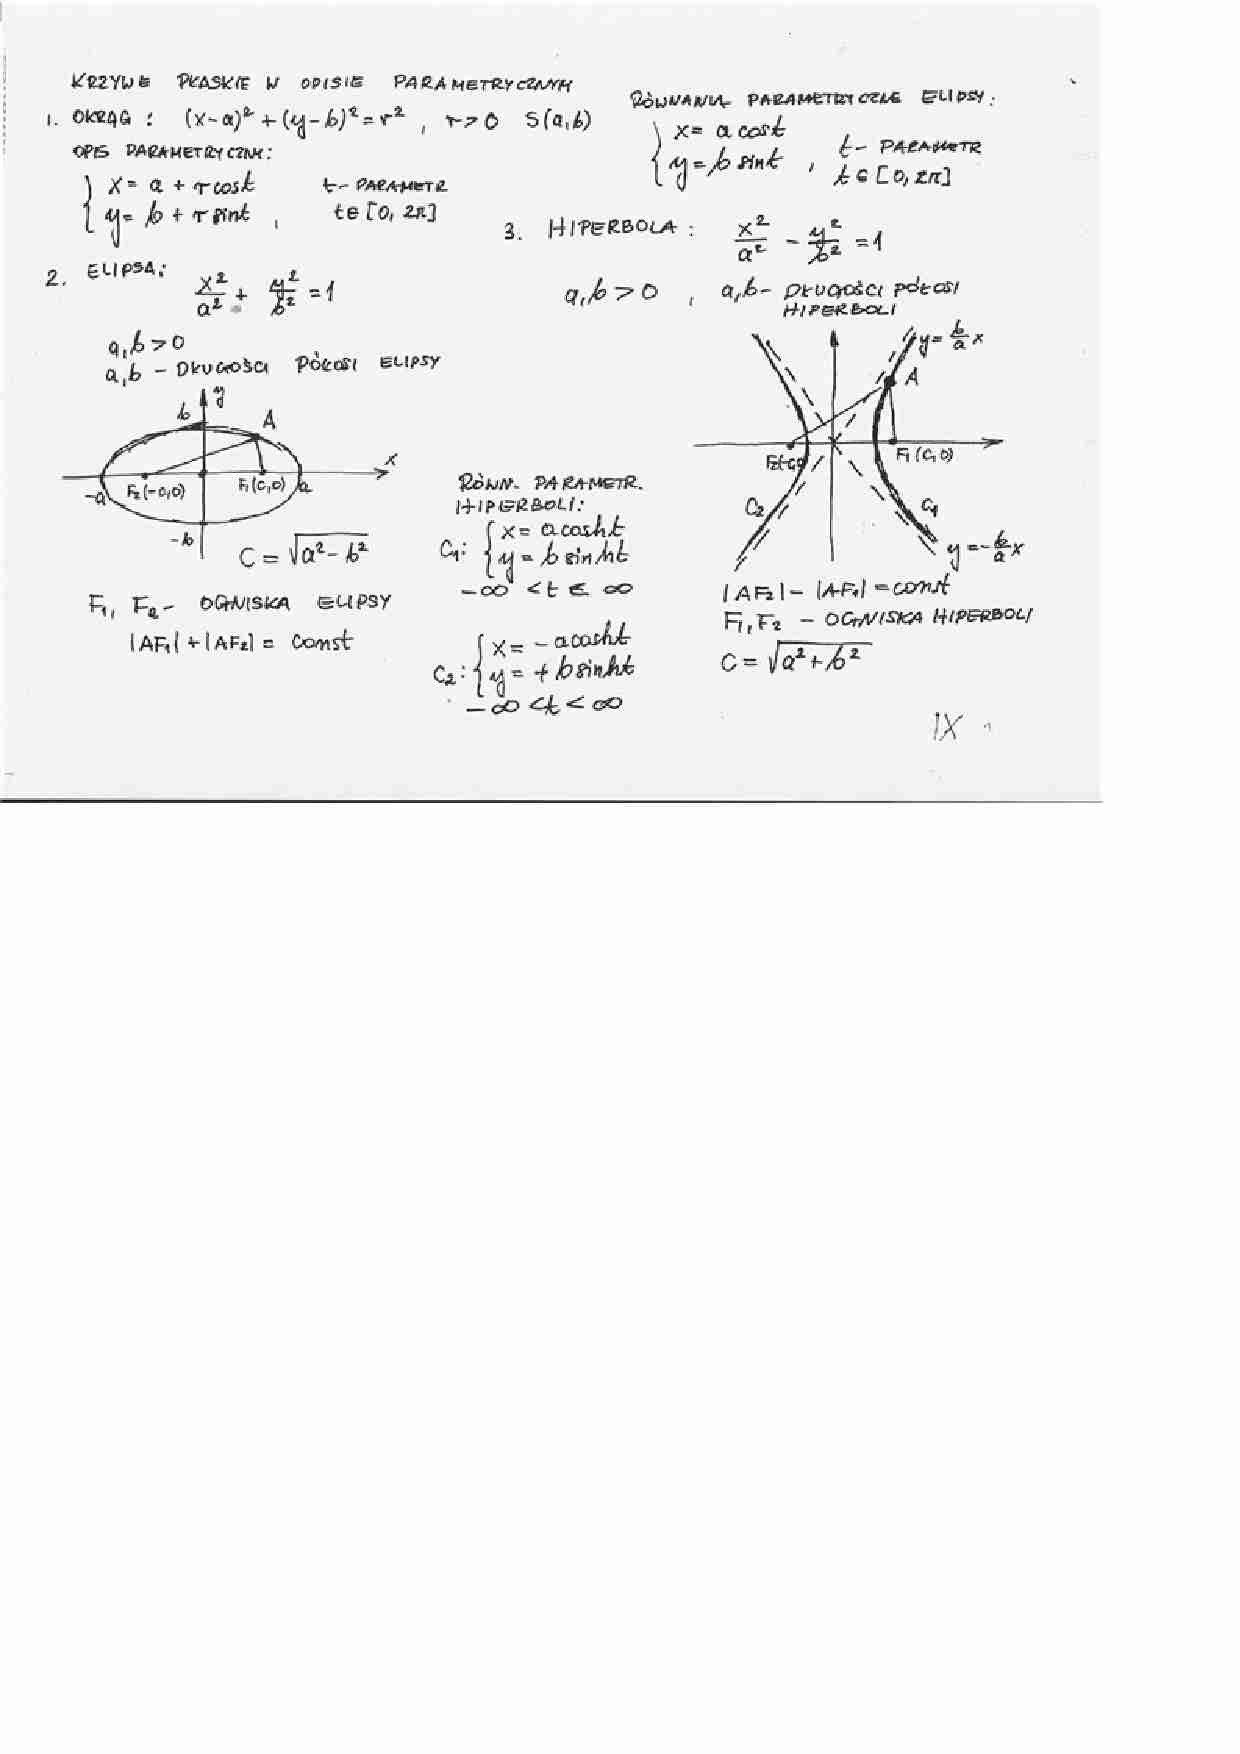 Krzywe płaskie w opisie parametrycznym - wykład8 - strona 1